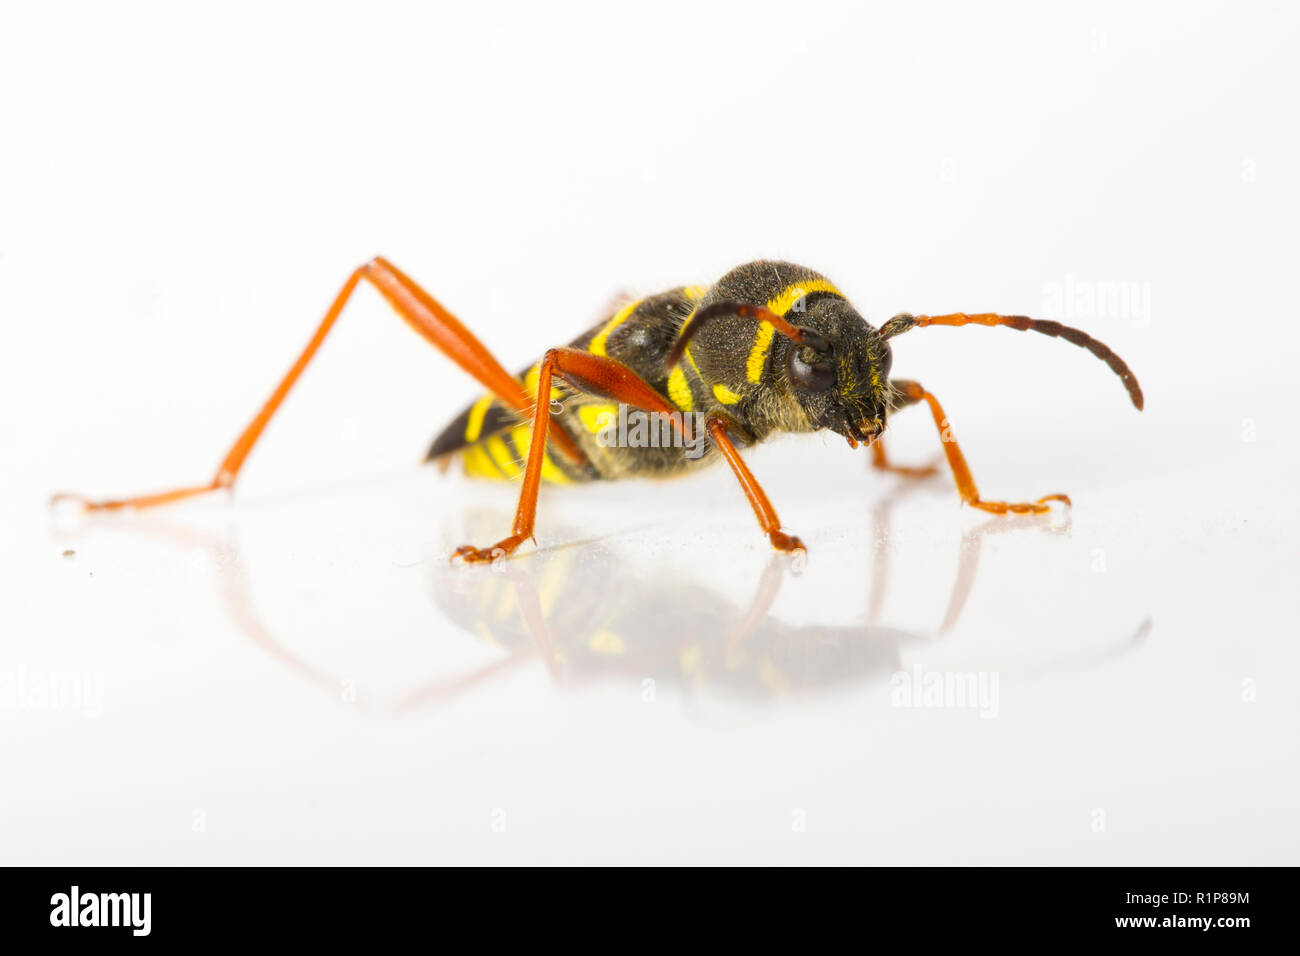 Wasp beetle (Clytus arietis), per adulti di insetti vivi fotografato su uno sfondo bianco. Powys, Galles. Giugno. Foto Stock